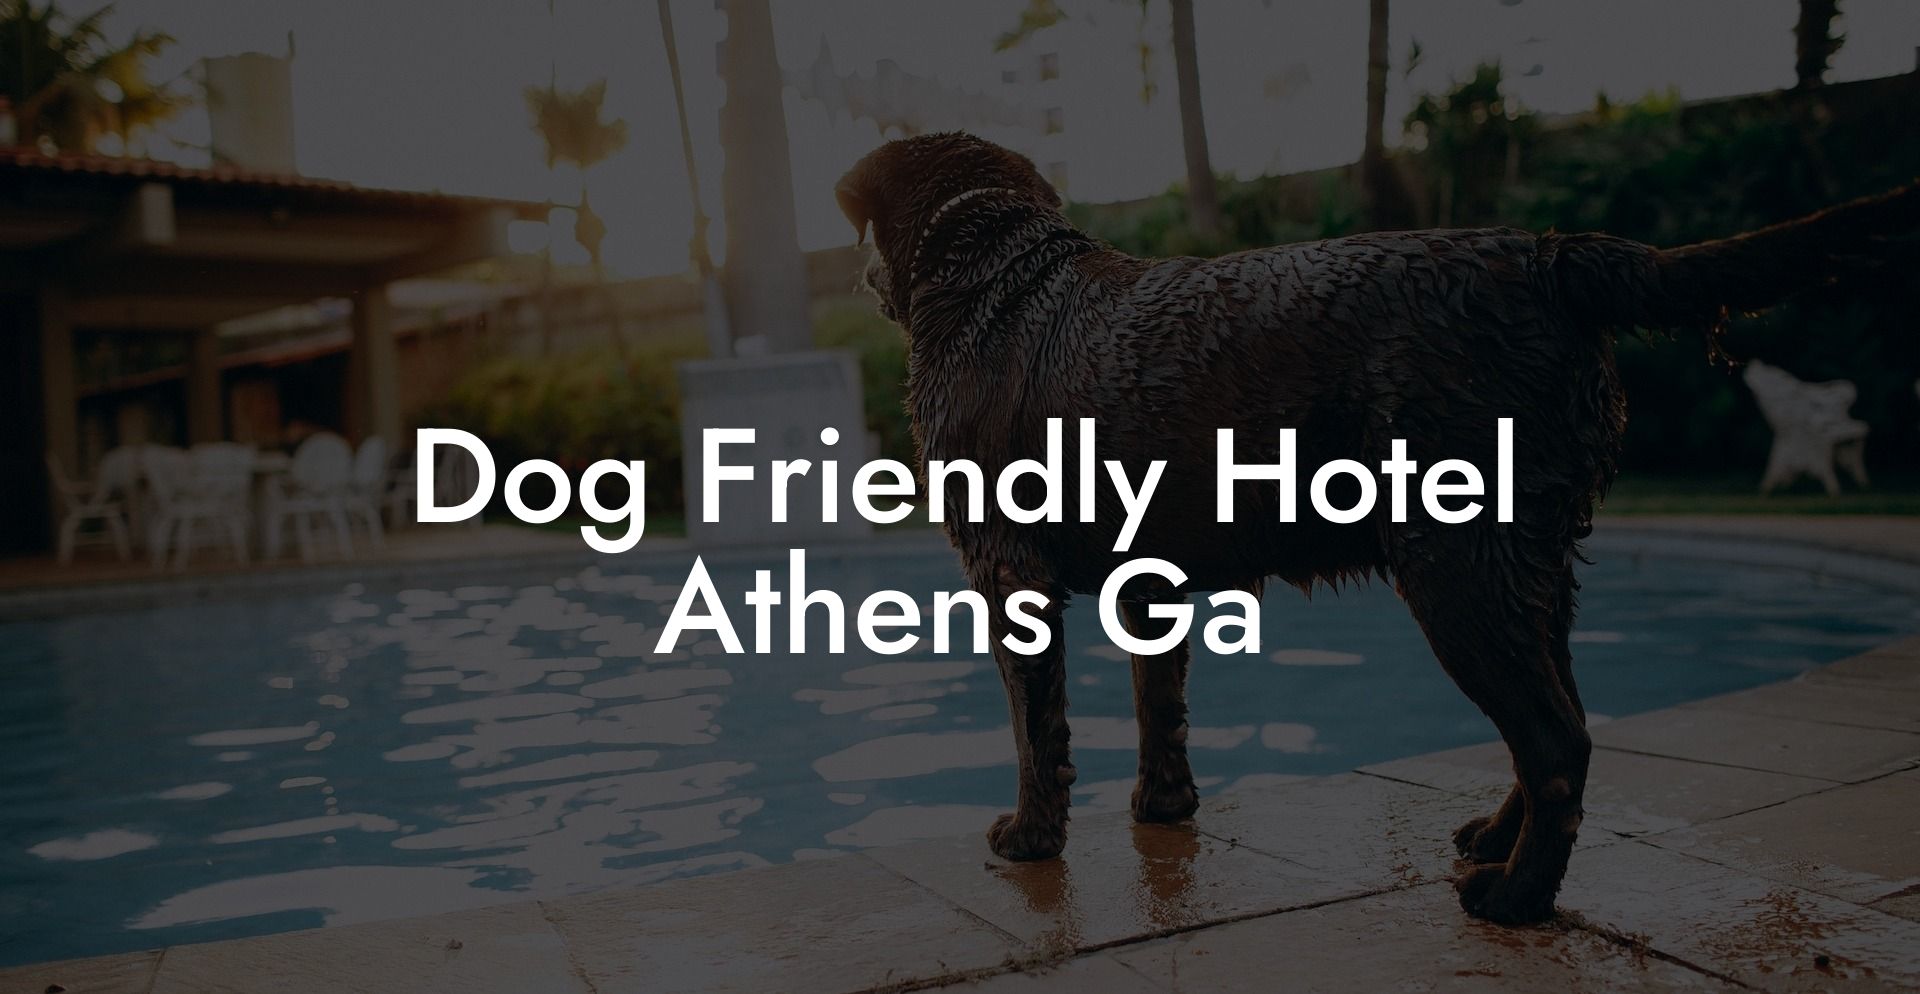 Dog Friendly Hotel Athens Ga